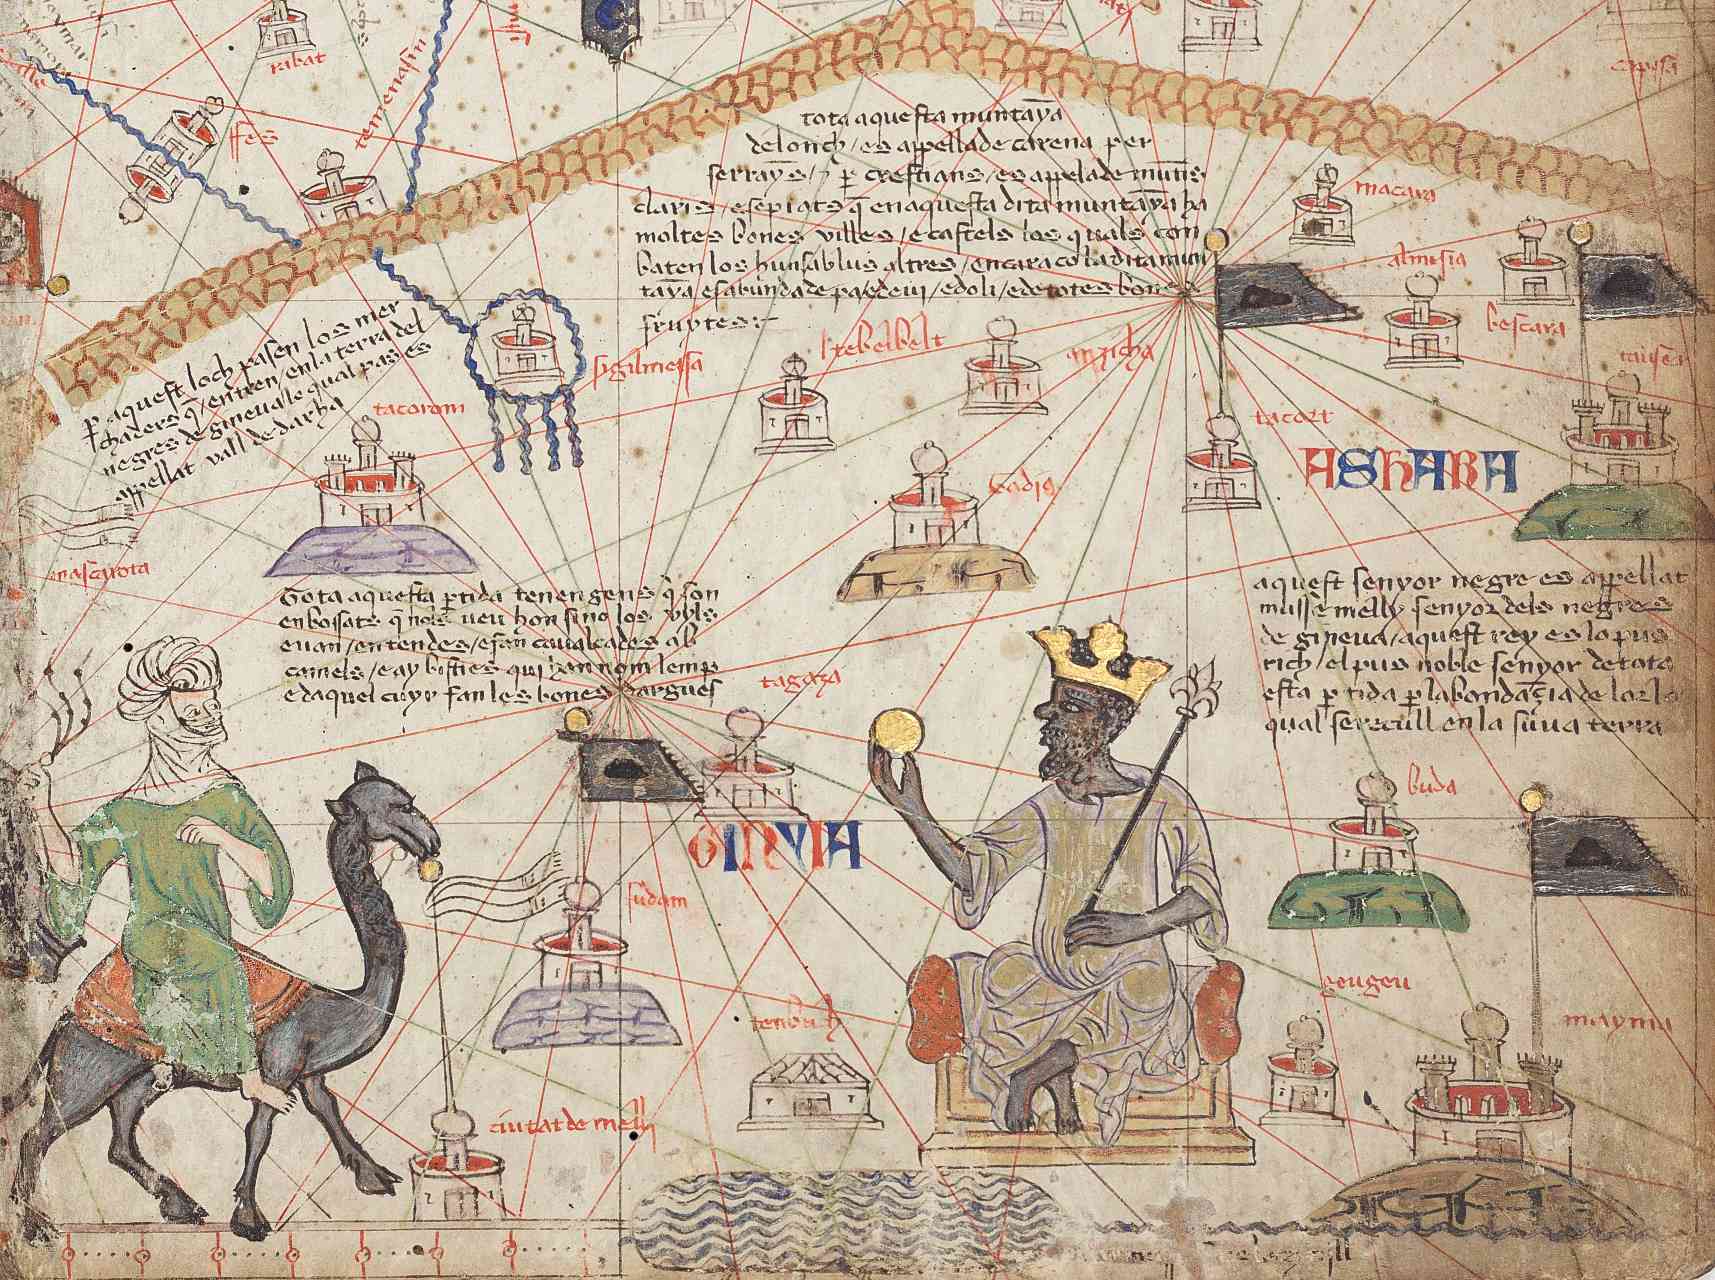 Chi tiết từ Tờ bản đồ Catalan 6 cho thấy Tây Sahara. Dãy núi Atlas ở trên cùng và sông Niger ở dưới cùng. Mansa Musa được thể hiện ngồi trên ngai vàng và cầm một đồng tiền vàng.